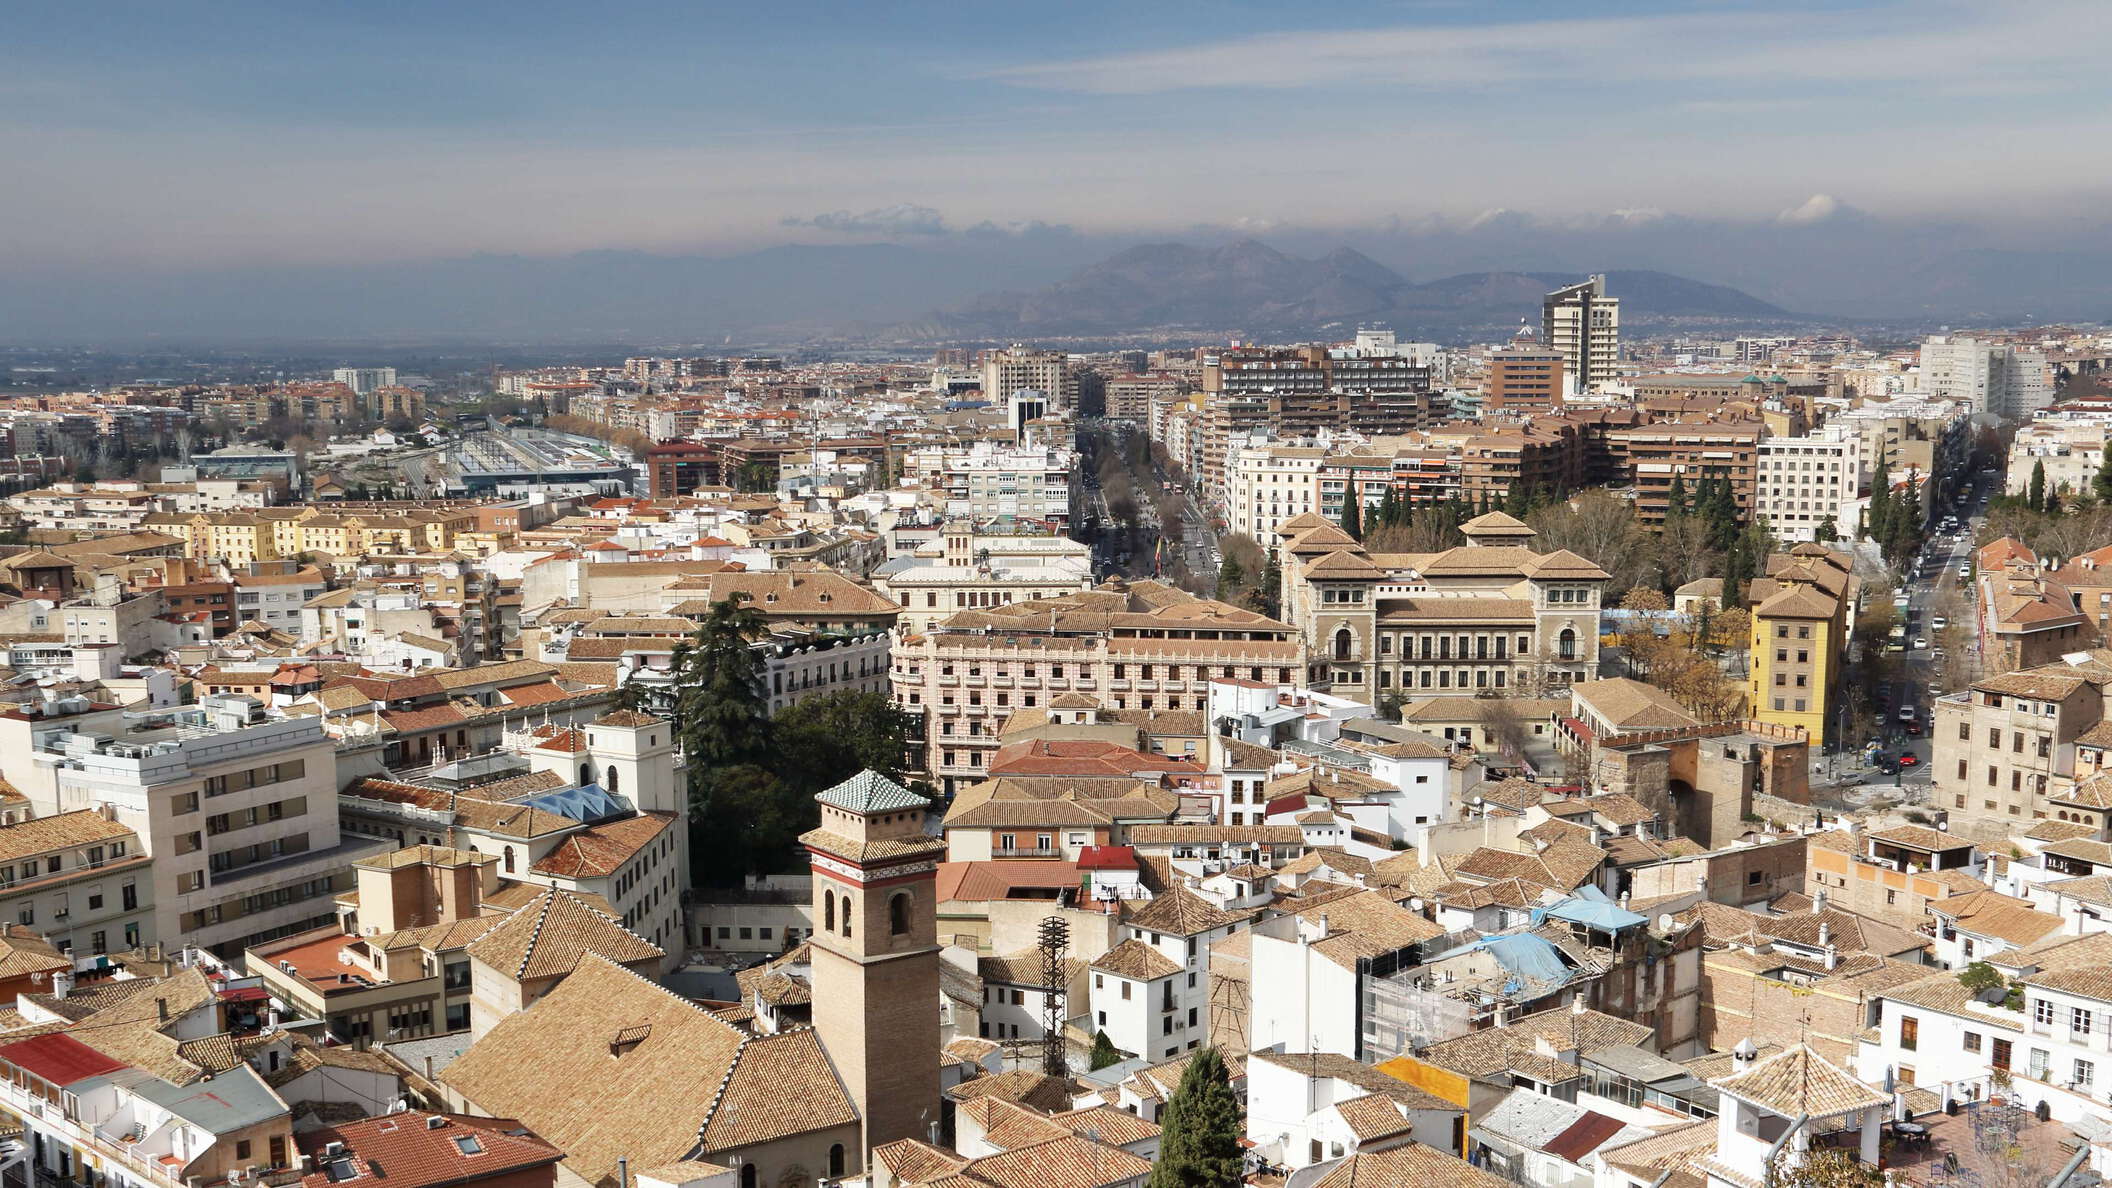 Granada | Urban landscape